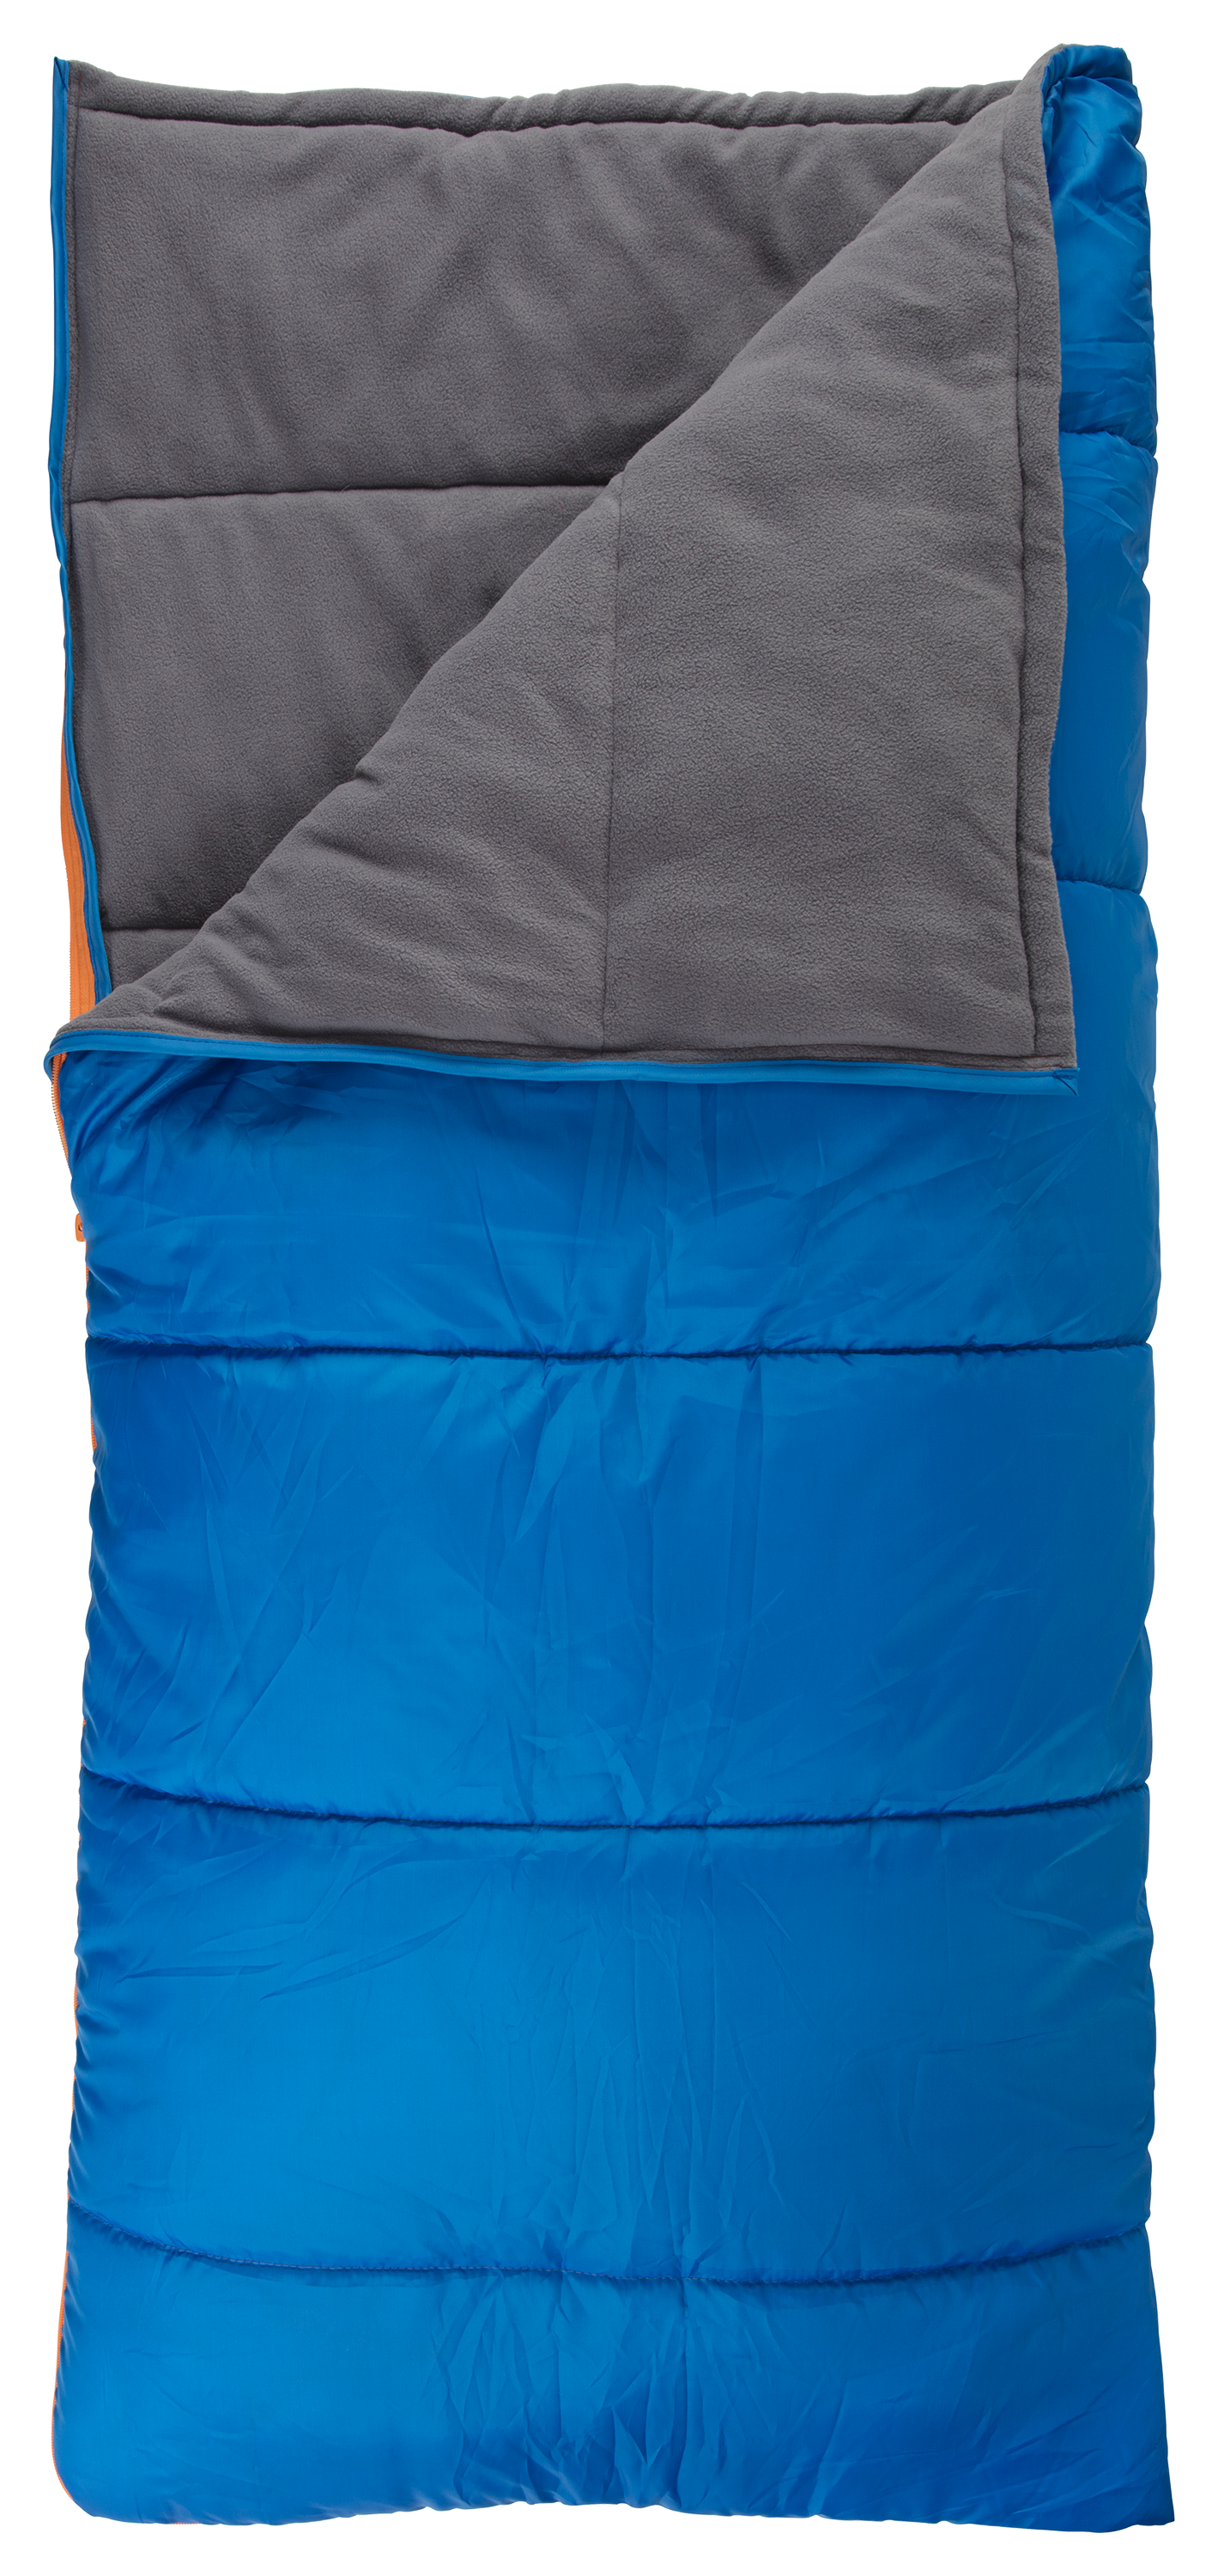 Bass Pro Shops 30 Rectangular Sleeping Bag for Kids  - Blue